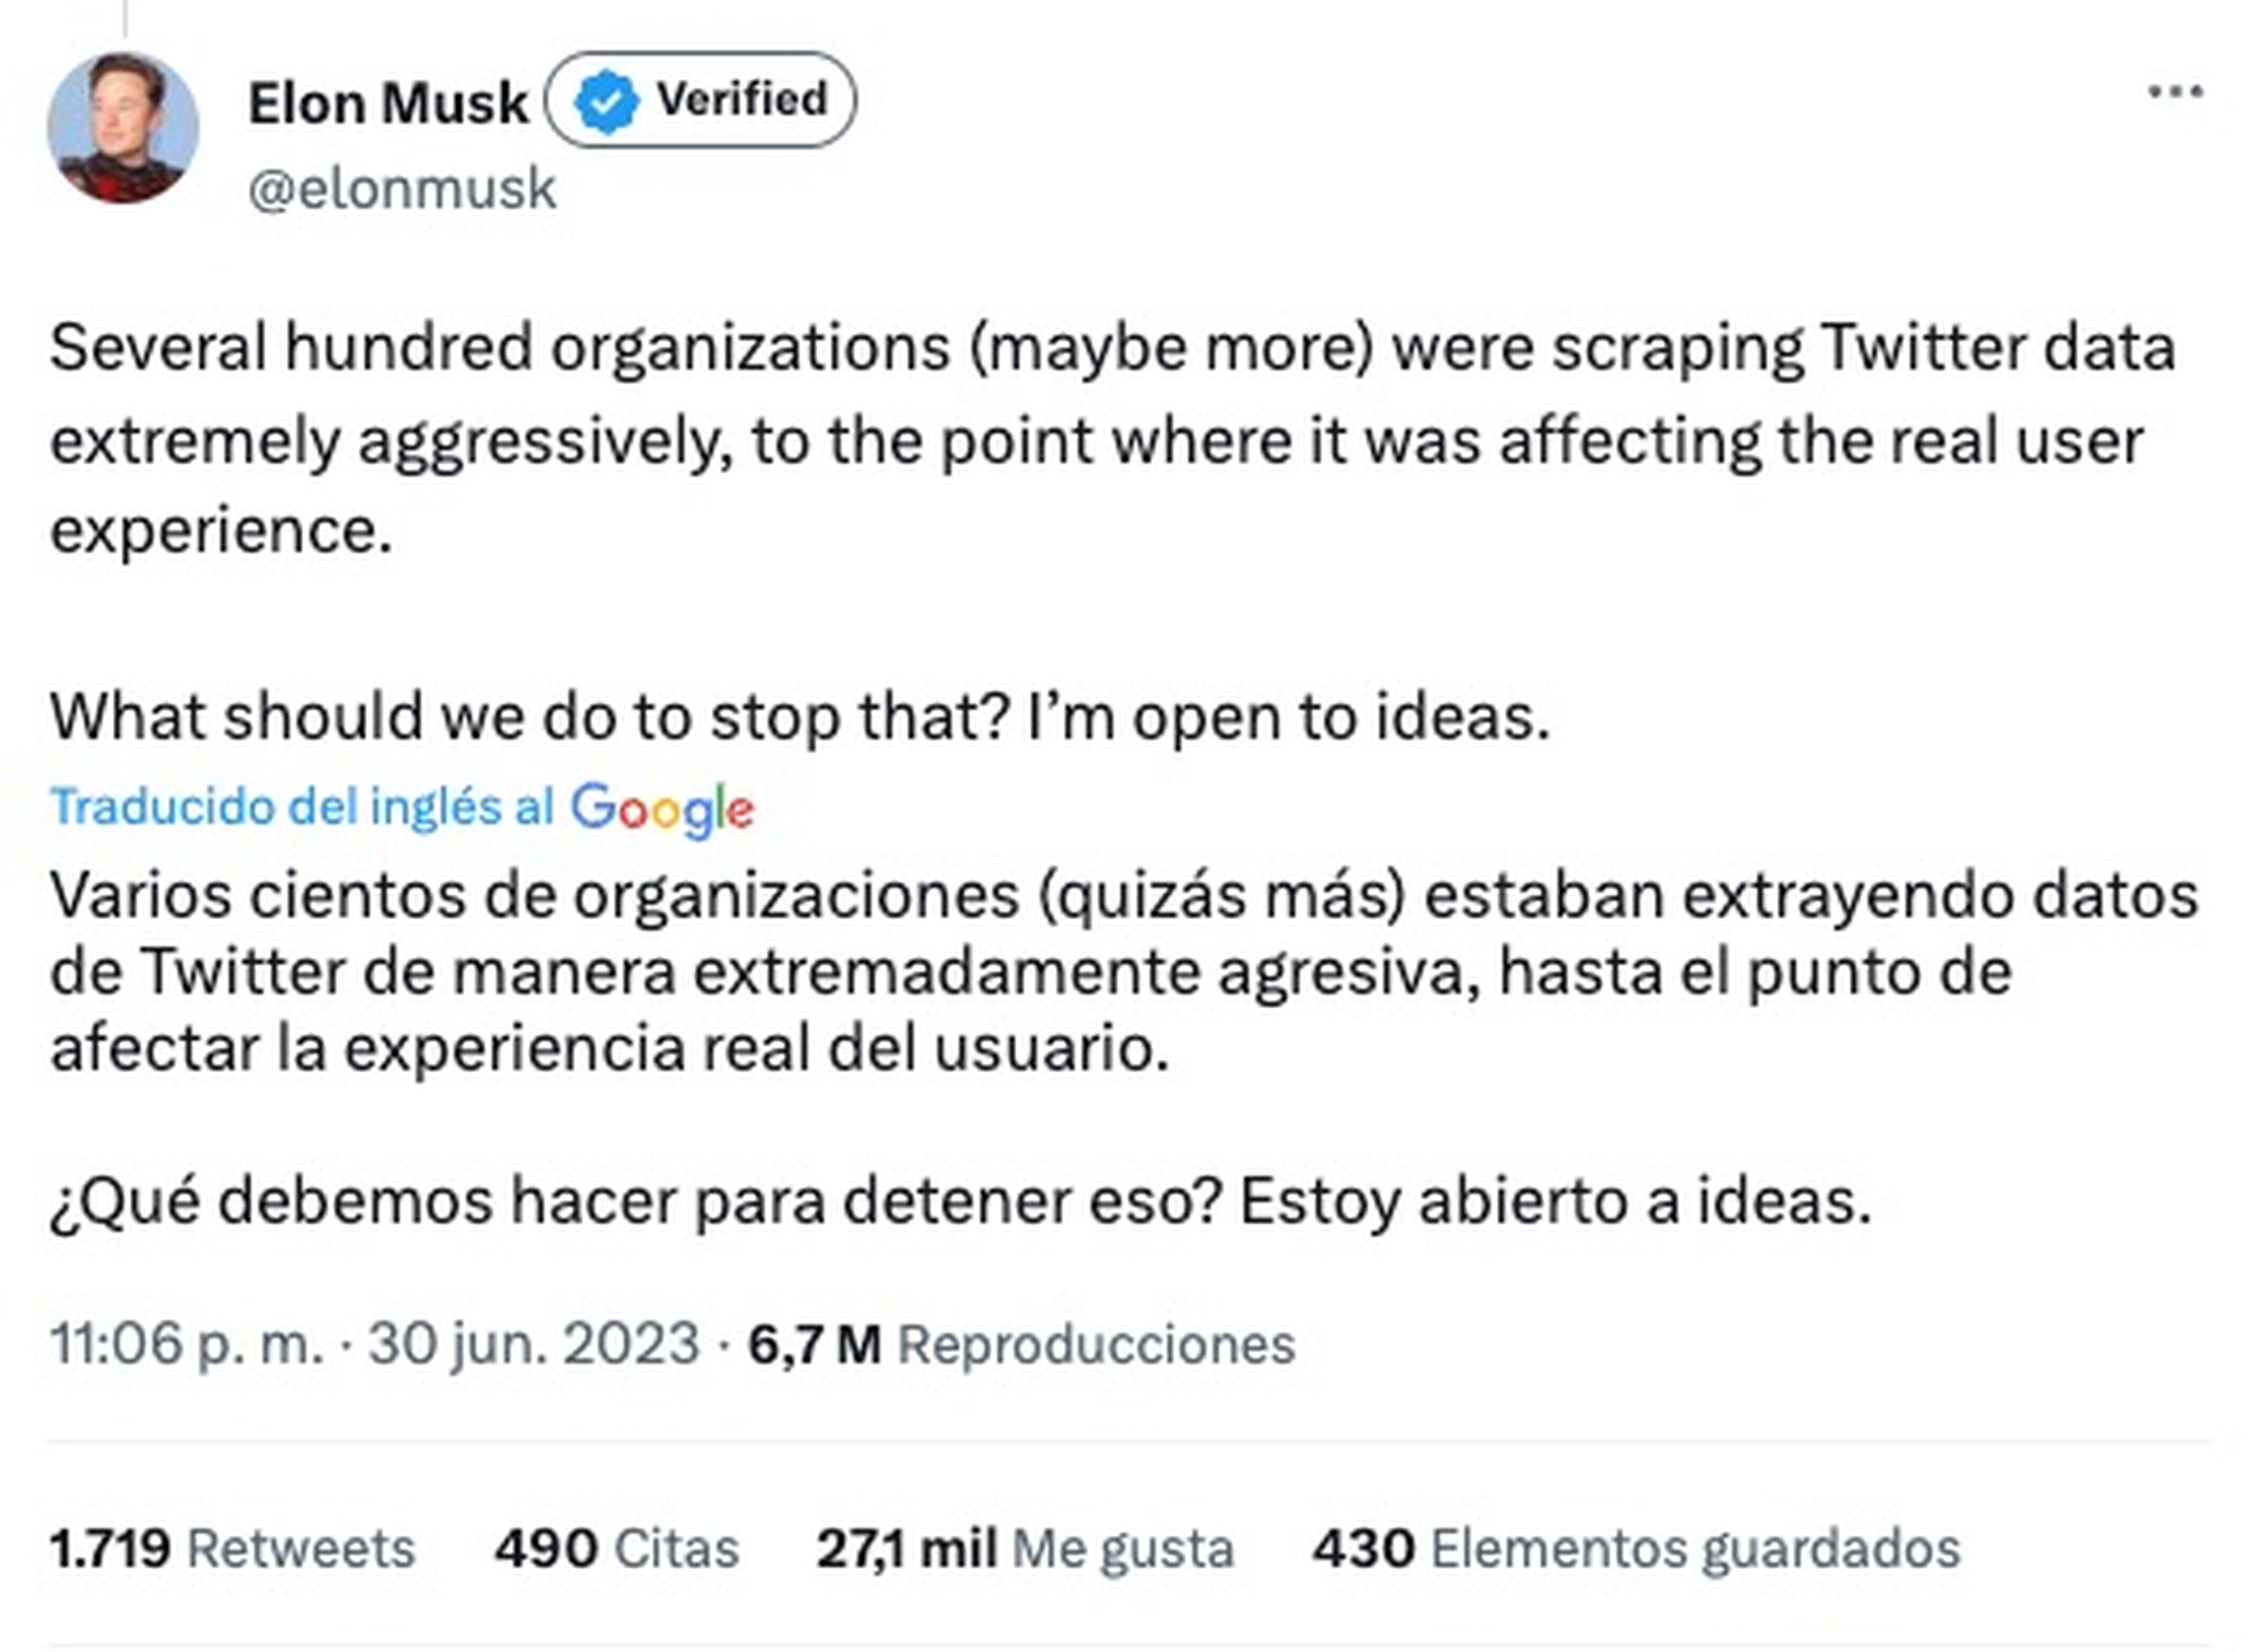 Tweet de Elon Musk anunciando el supuesto ataque DDOS